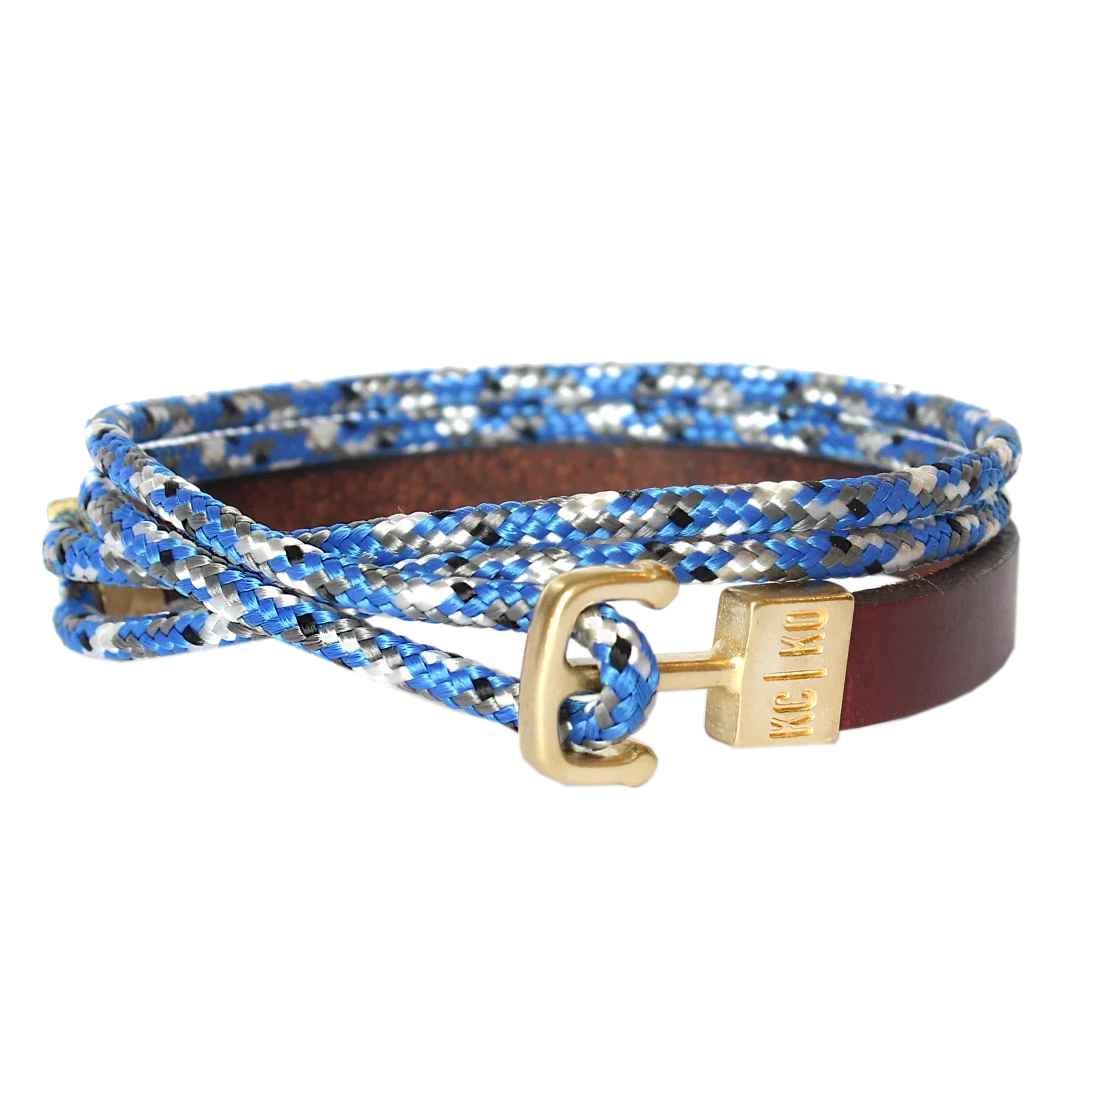 Double Wrap Leather & Cord Bracelet: Blue Camo